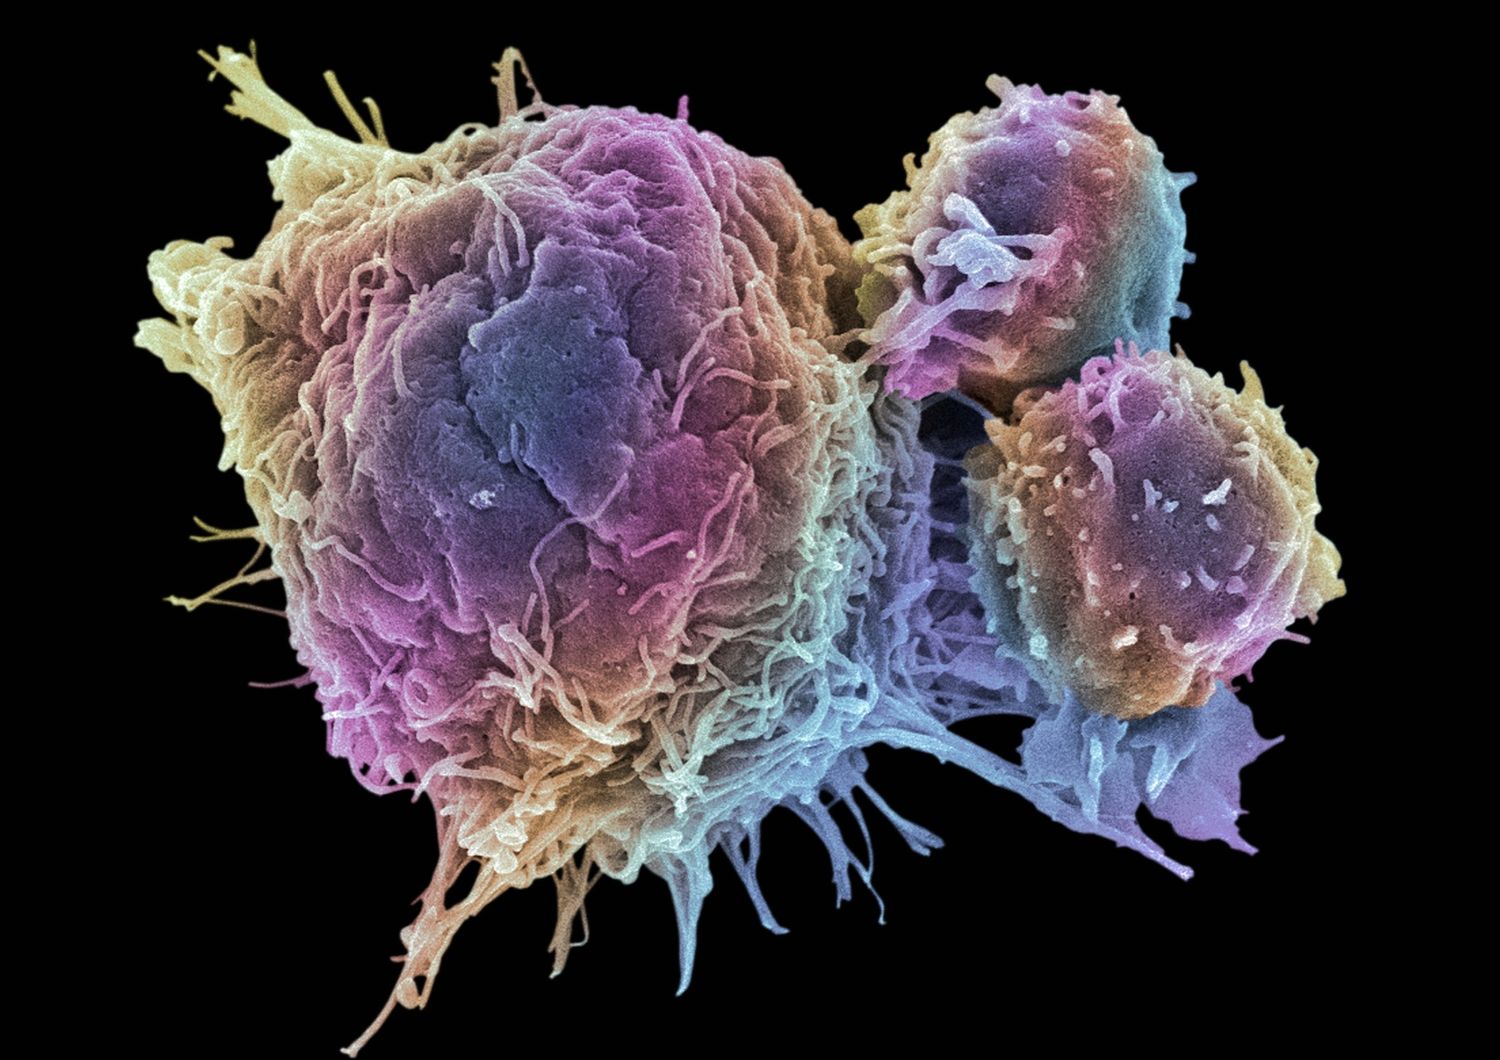 &nbsp;cellule tumorali tumore cancro - afp